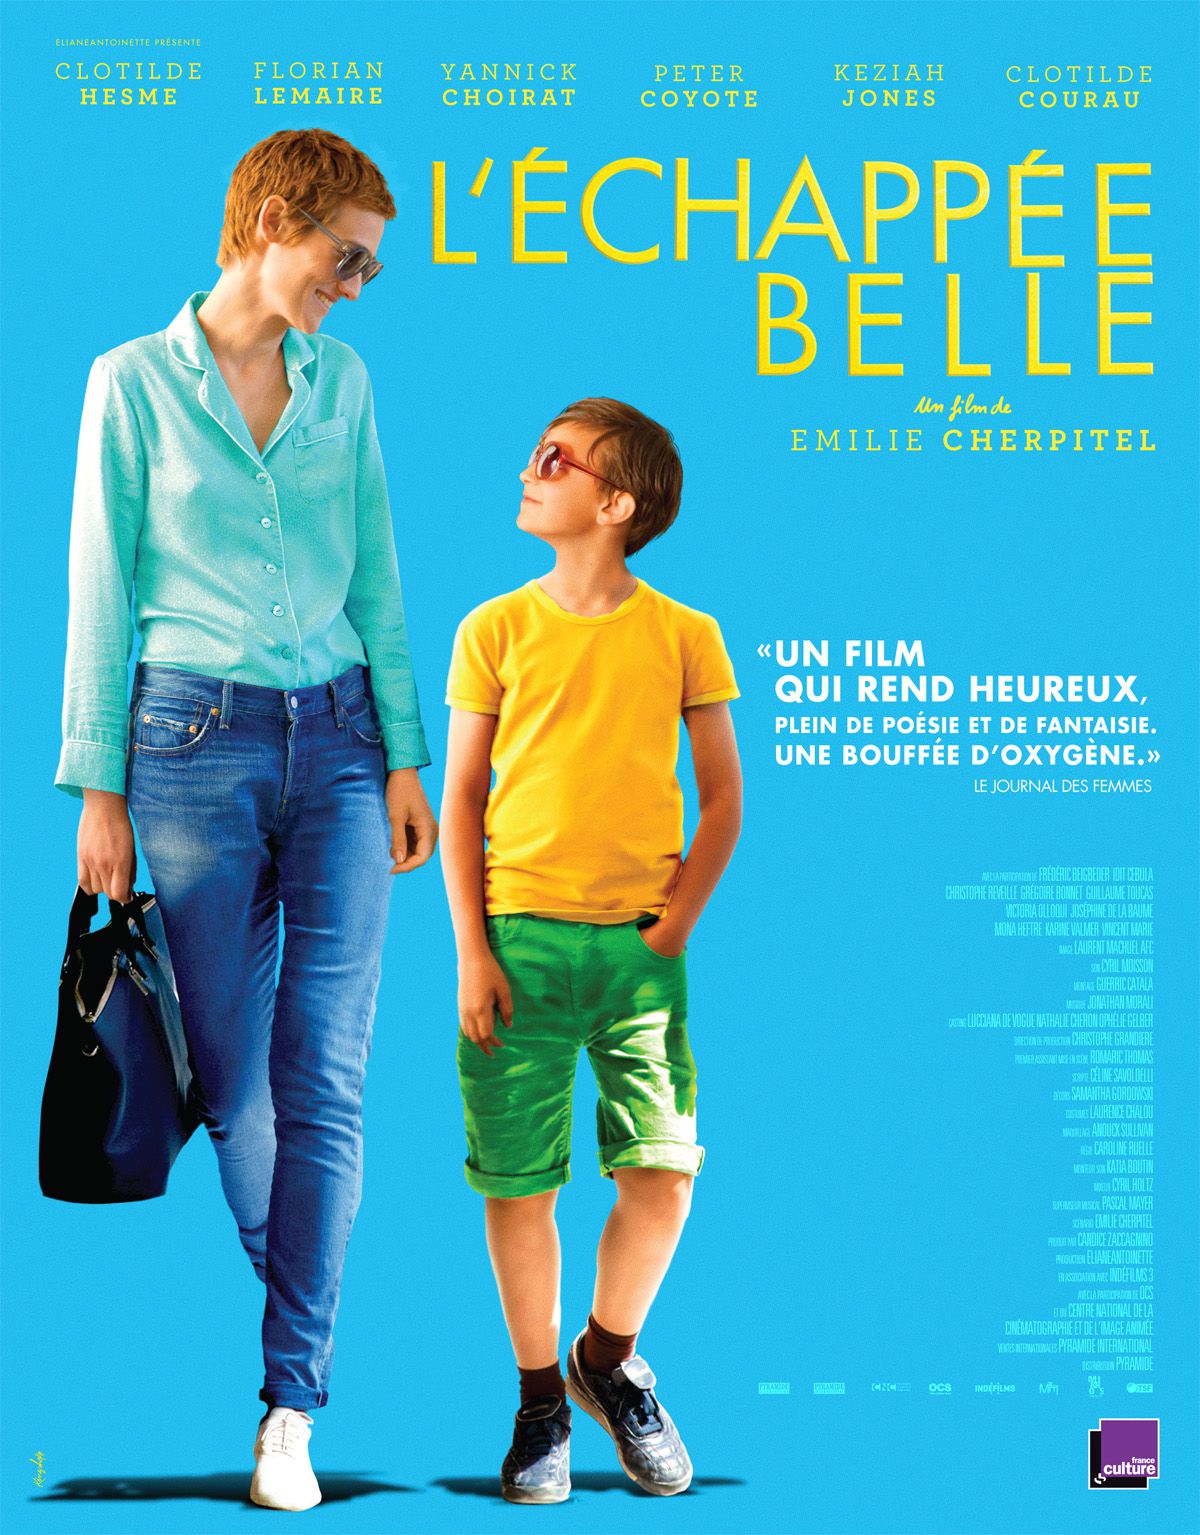 L'échappée belle - Film (2015) streaming VF gratuit complet